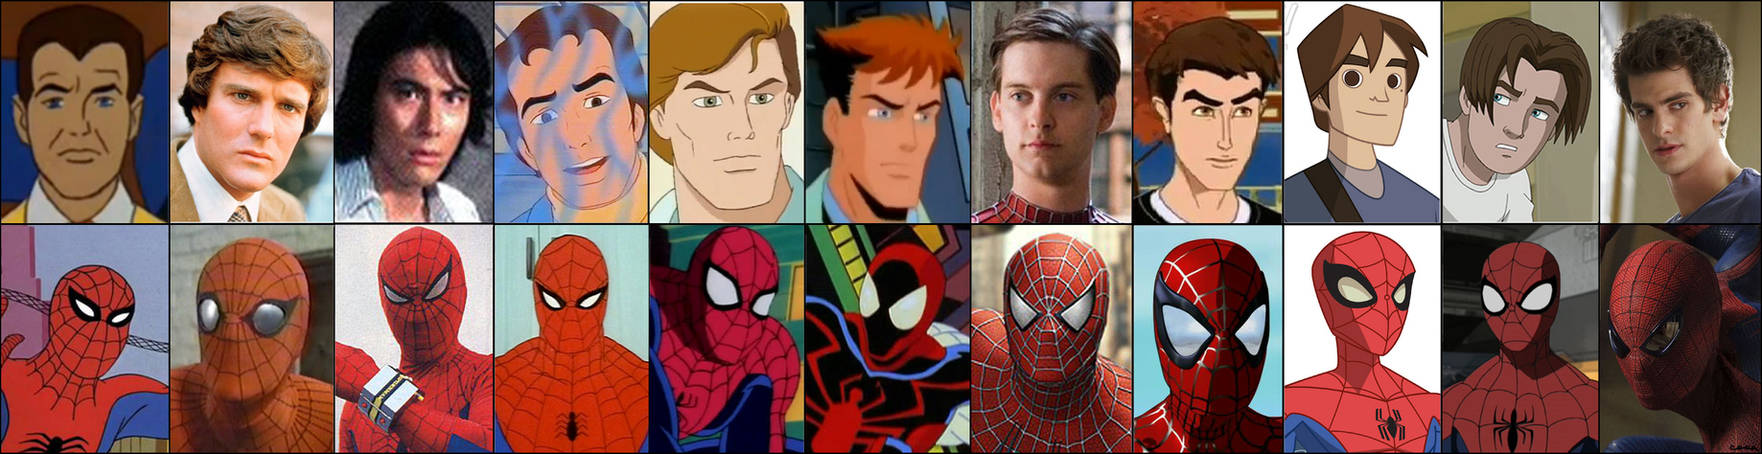 Человек паук какая последовательность. Питер Паркер 1994. Человек паук 1994 Питер Паркер. Питер Паркер человек паук самый 1.